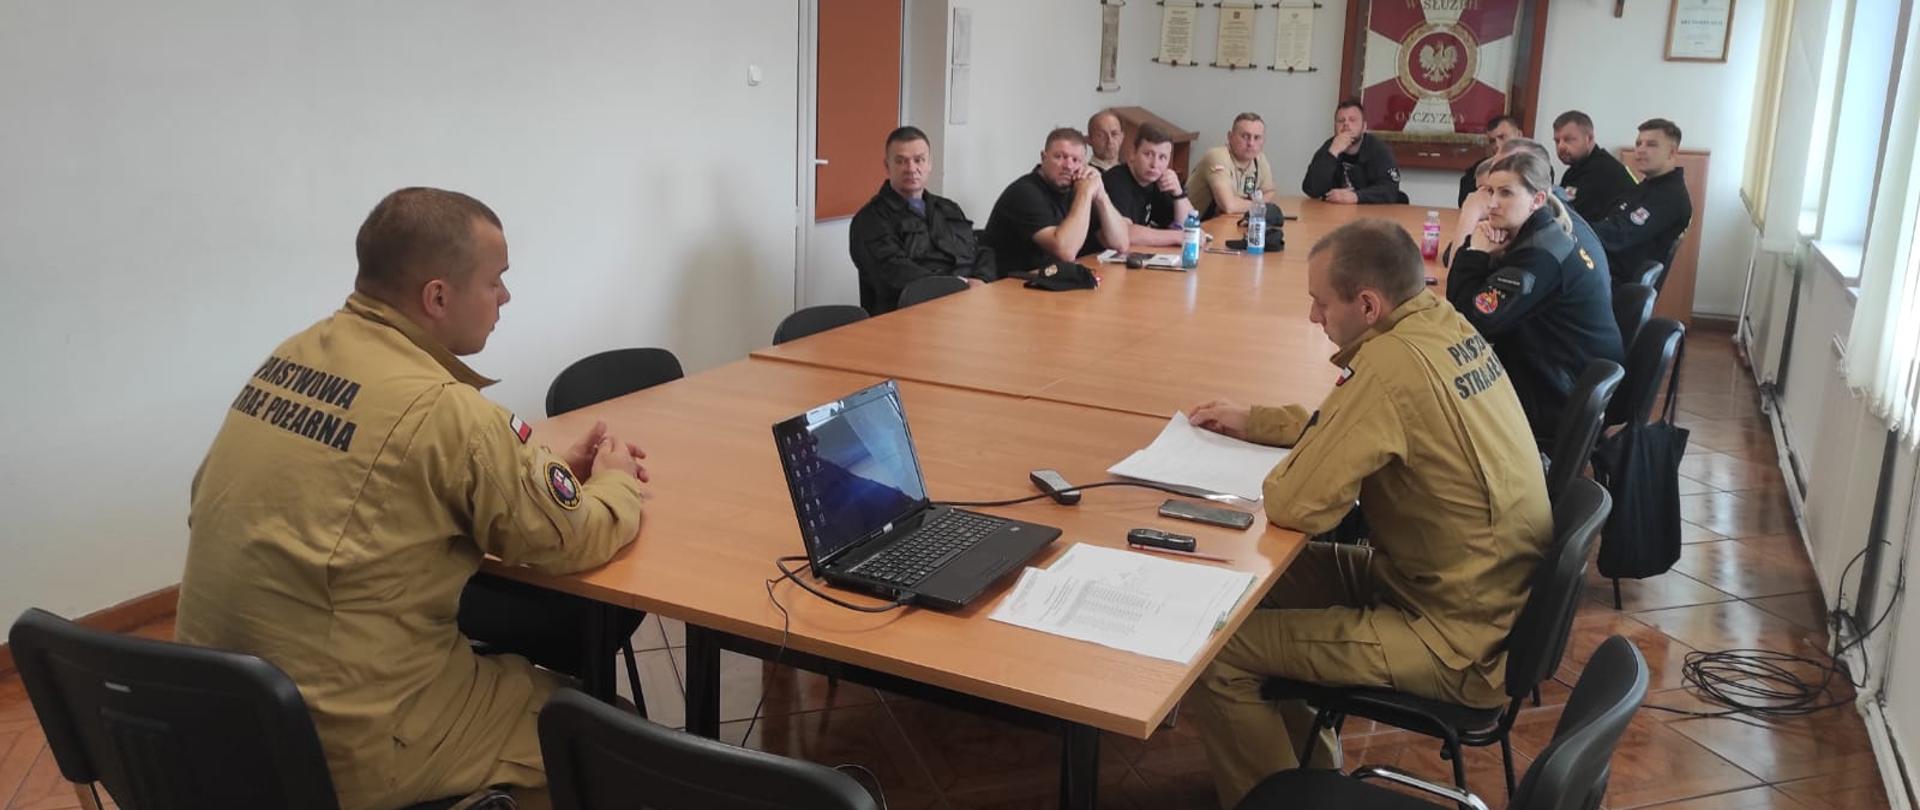 Zdjęcie przedstawia wykład szkolenia dowódców OSP strażacy w piaskowych mundurach siedzą przy stołach z dokumentami i papierami opowiadając druhom osp